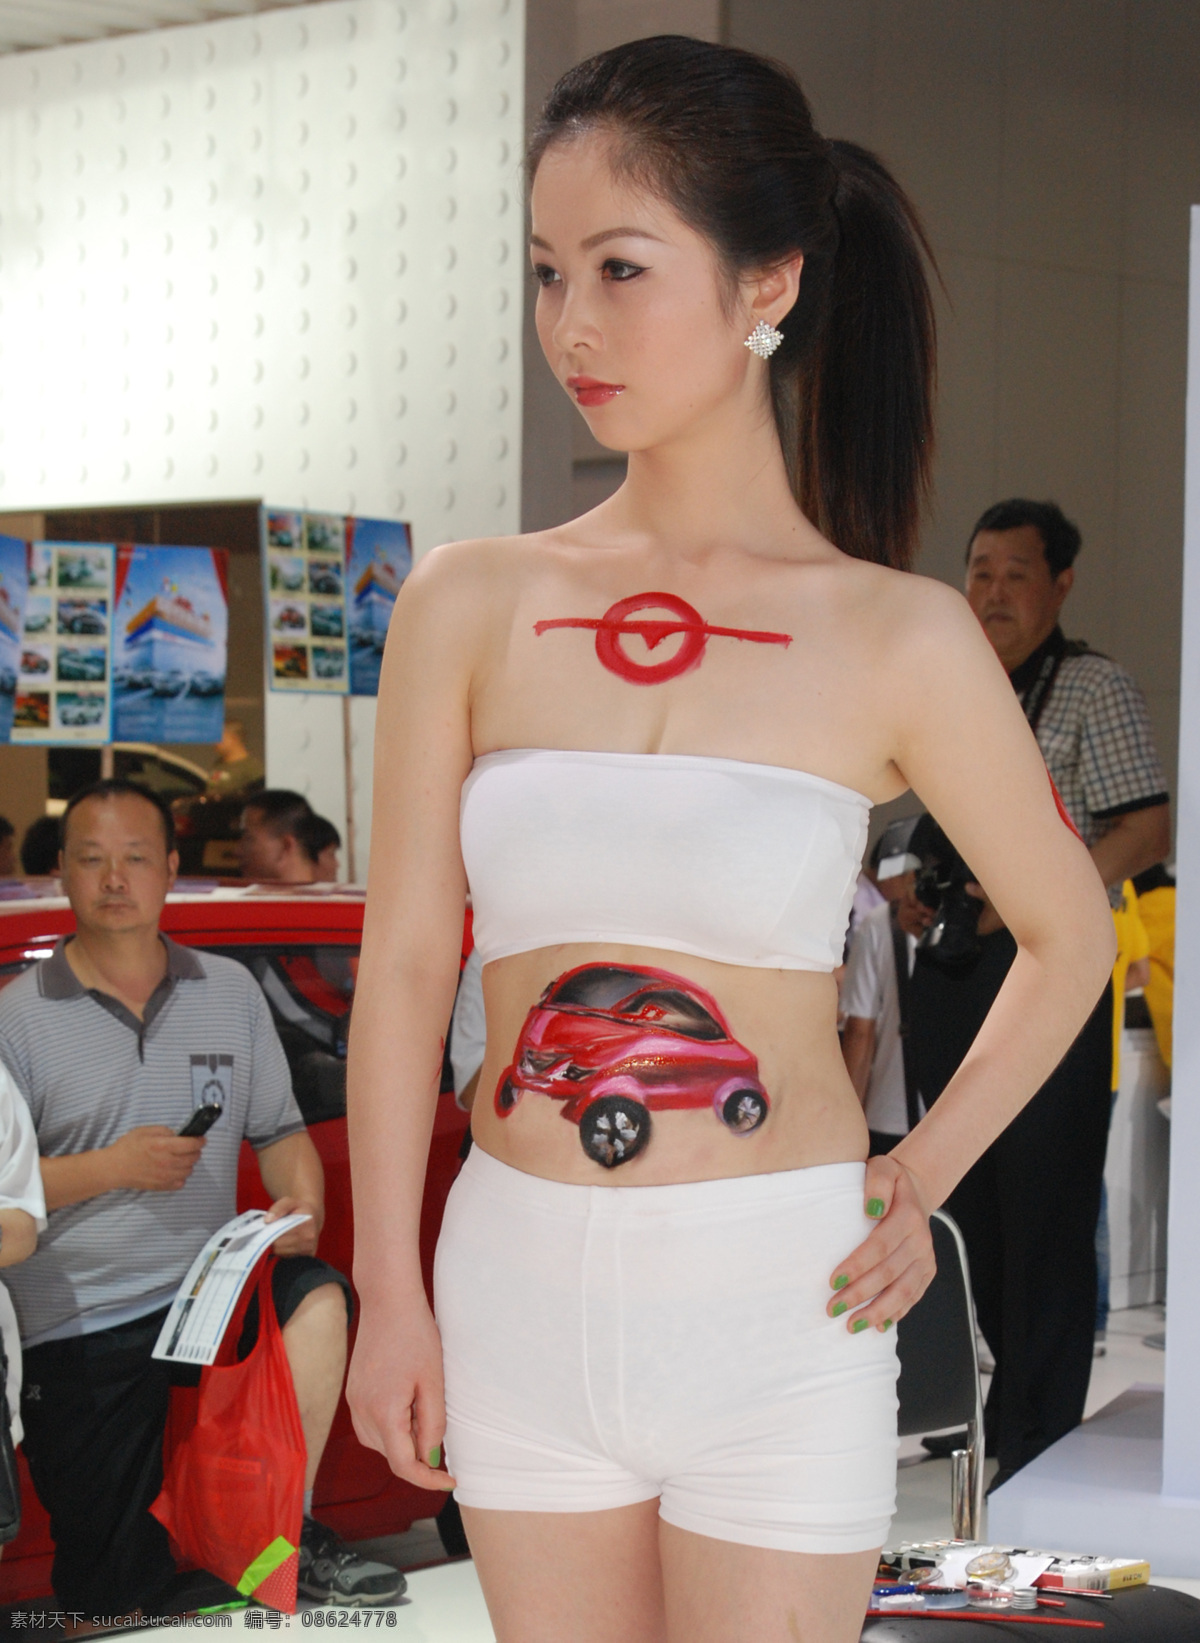 2011 彩绘 模特 模特摄影 男人 女人 汽车 人体 年 重庆 展览 展览会 人像 艺术 人物摄影 人物图库 装饰素材 展示设计